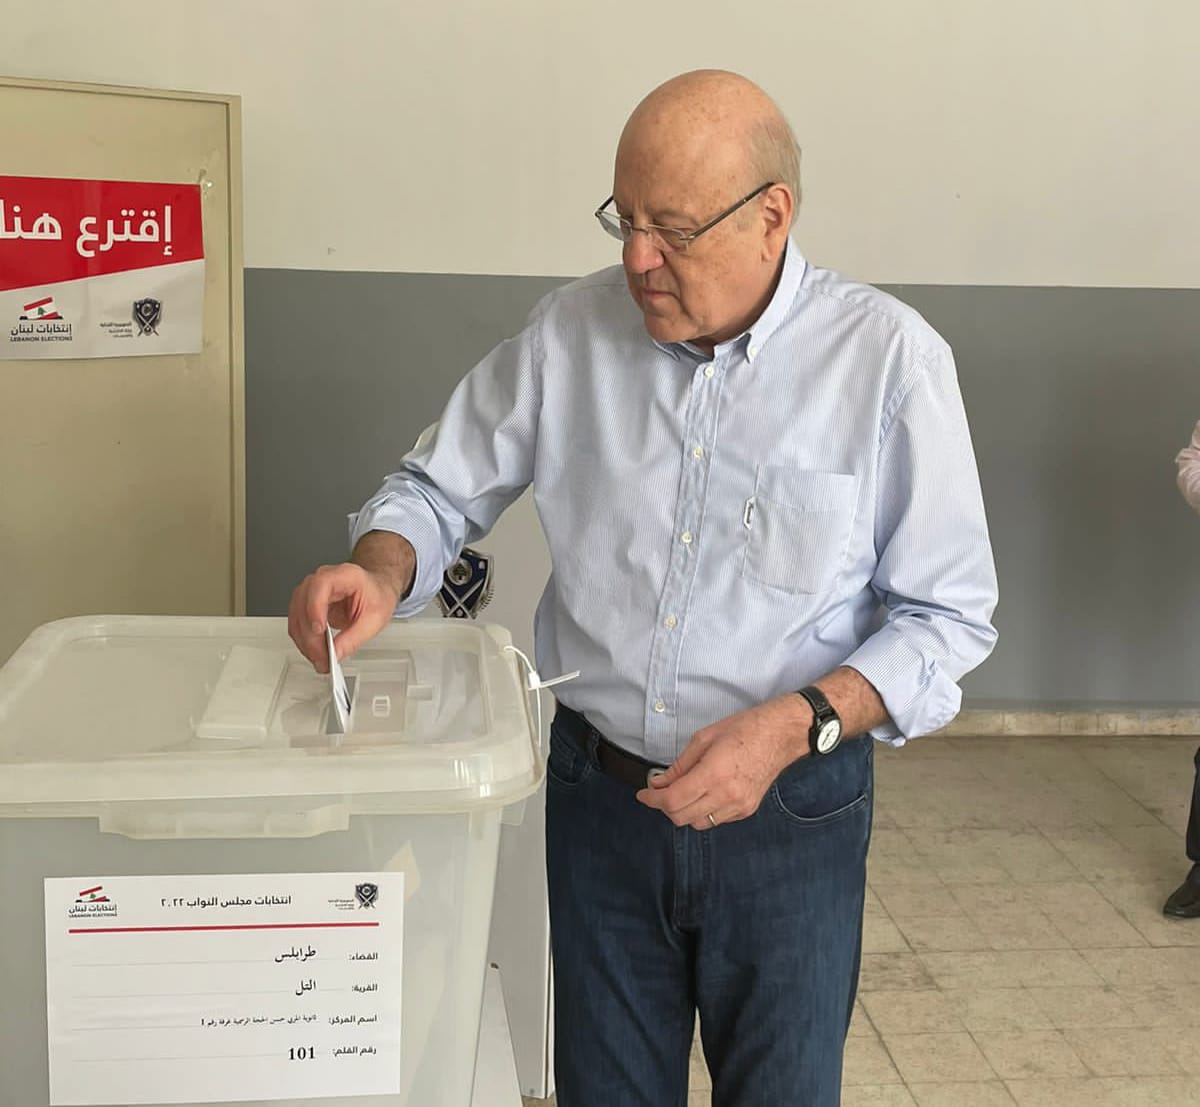 Lebanon's Prime Minister Najib Mikati casted his vote in the northern city of Tripoli